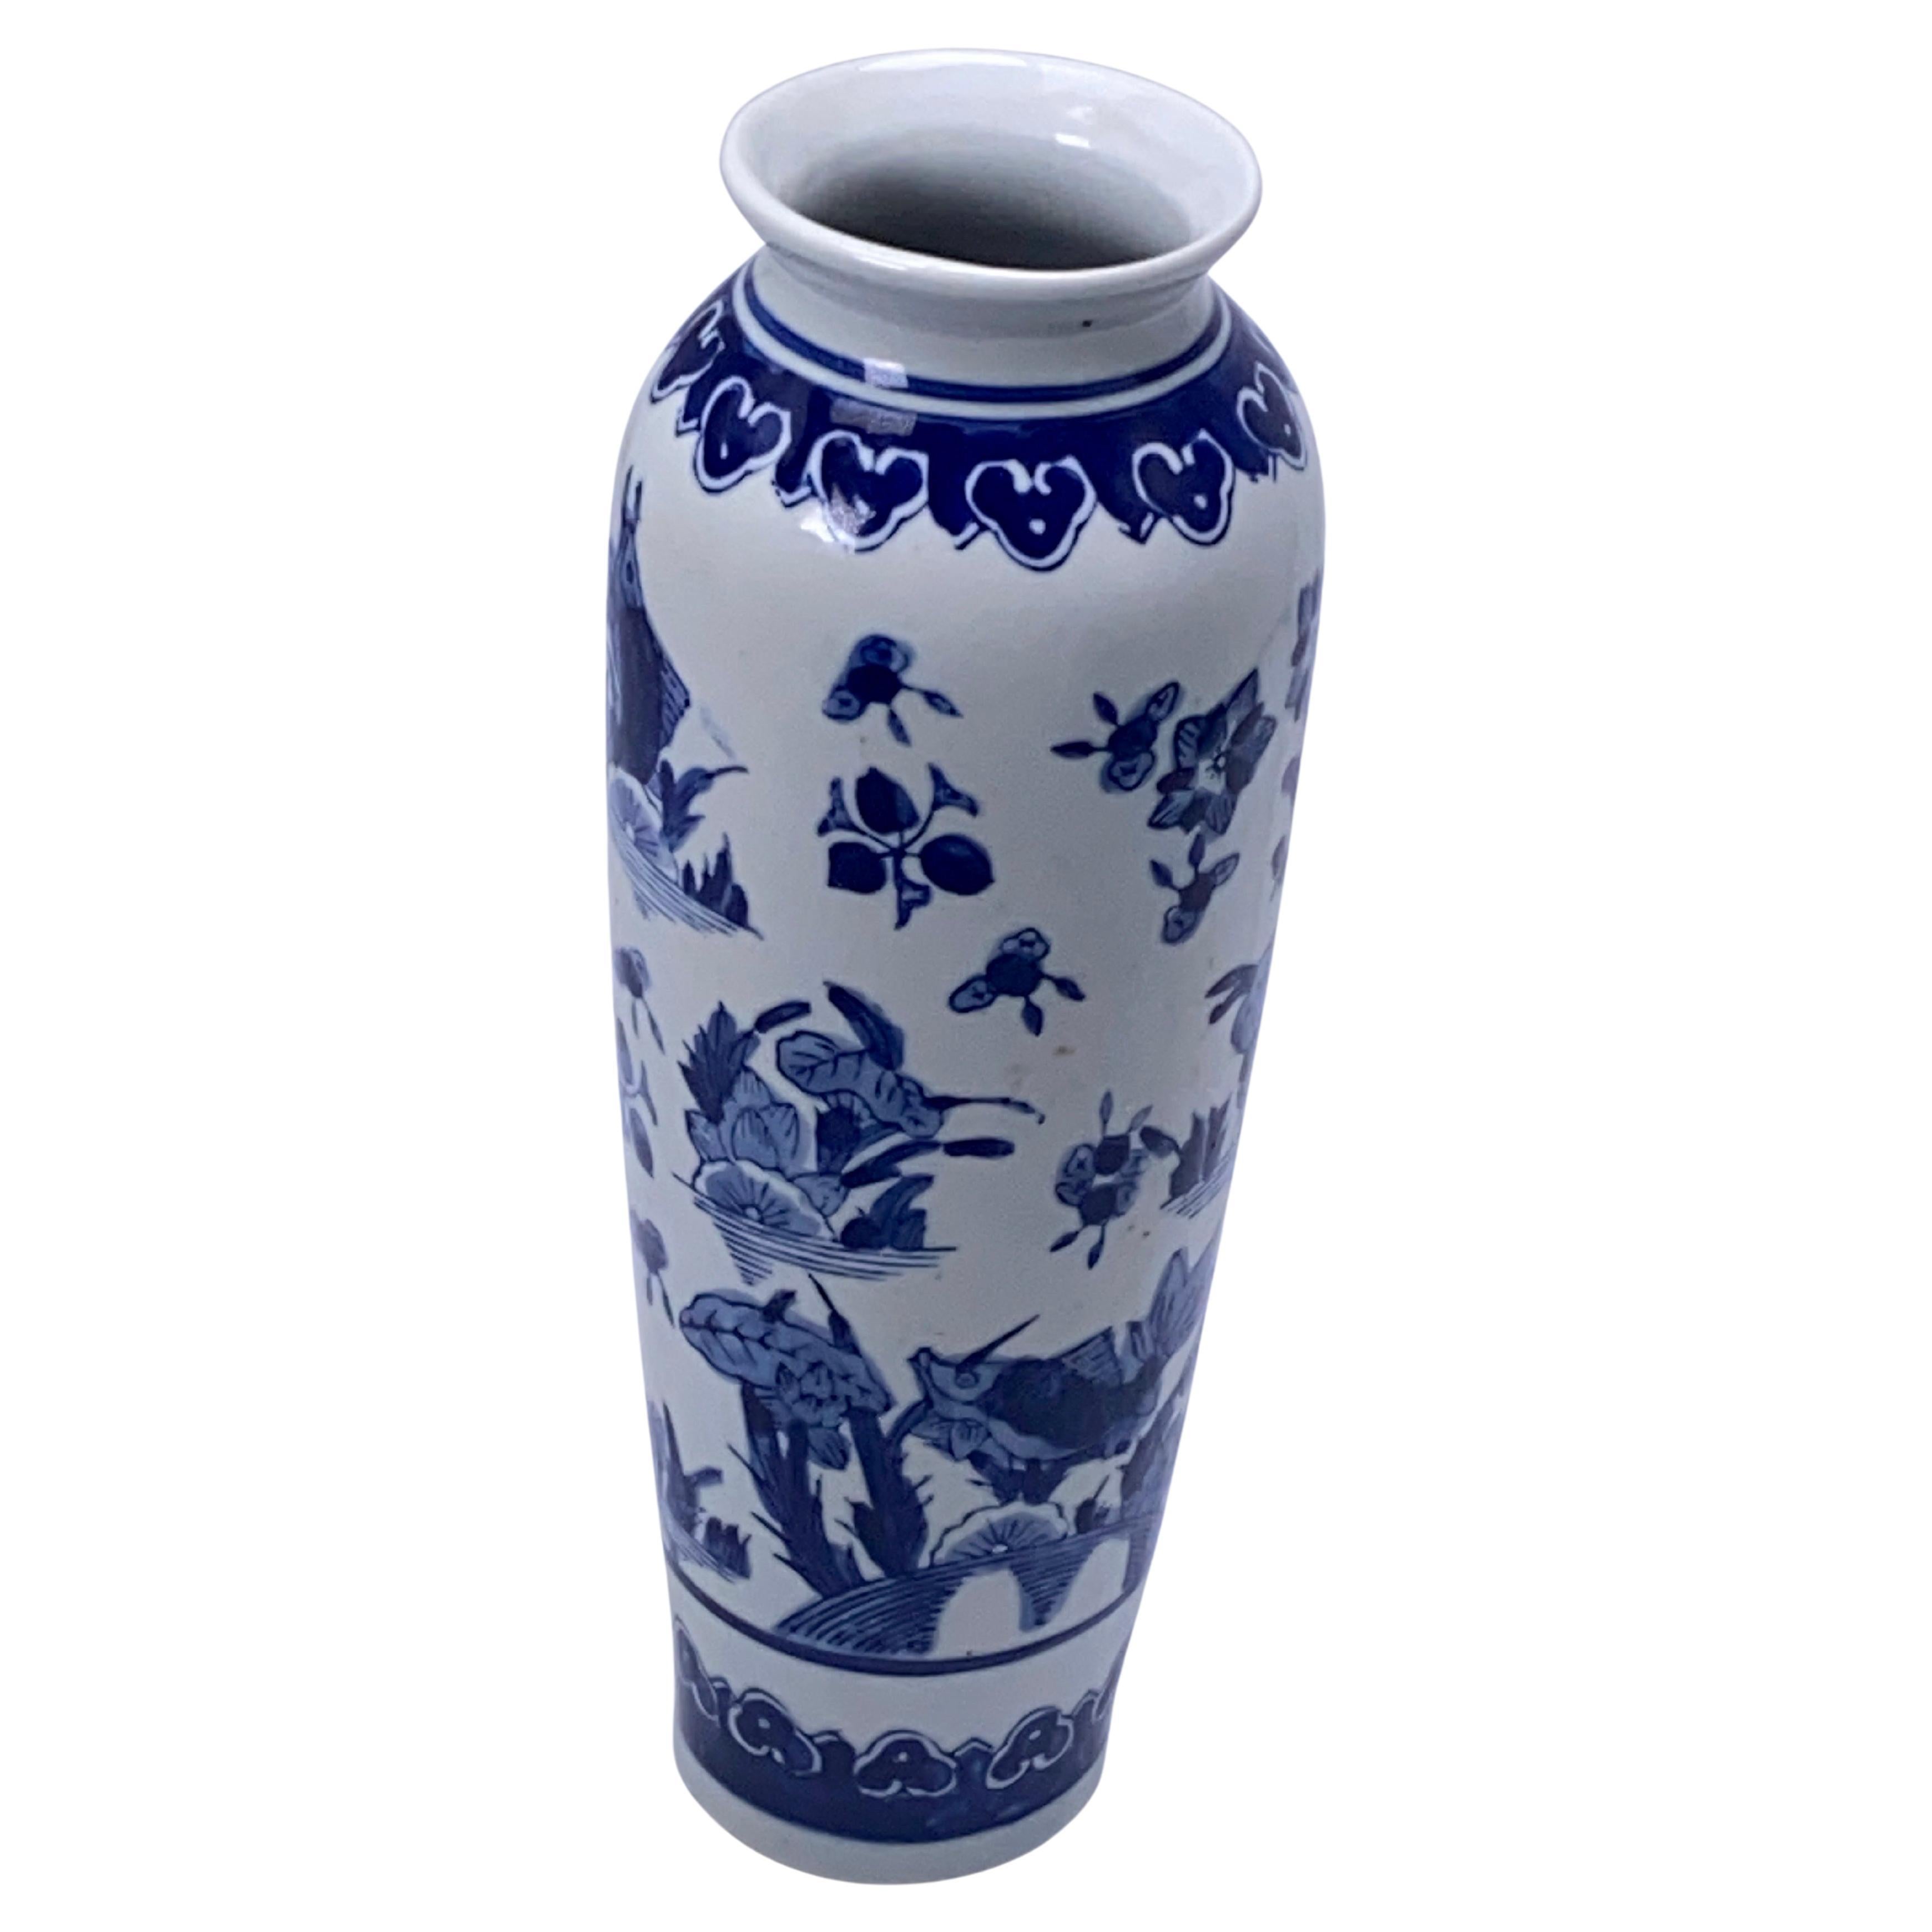 Vase de Chine, 20e siècle, bleu et blanc, porcelaine